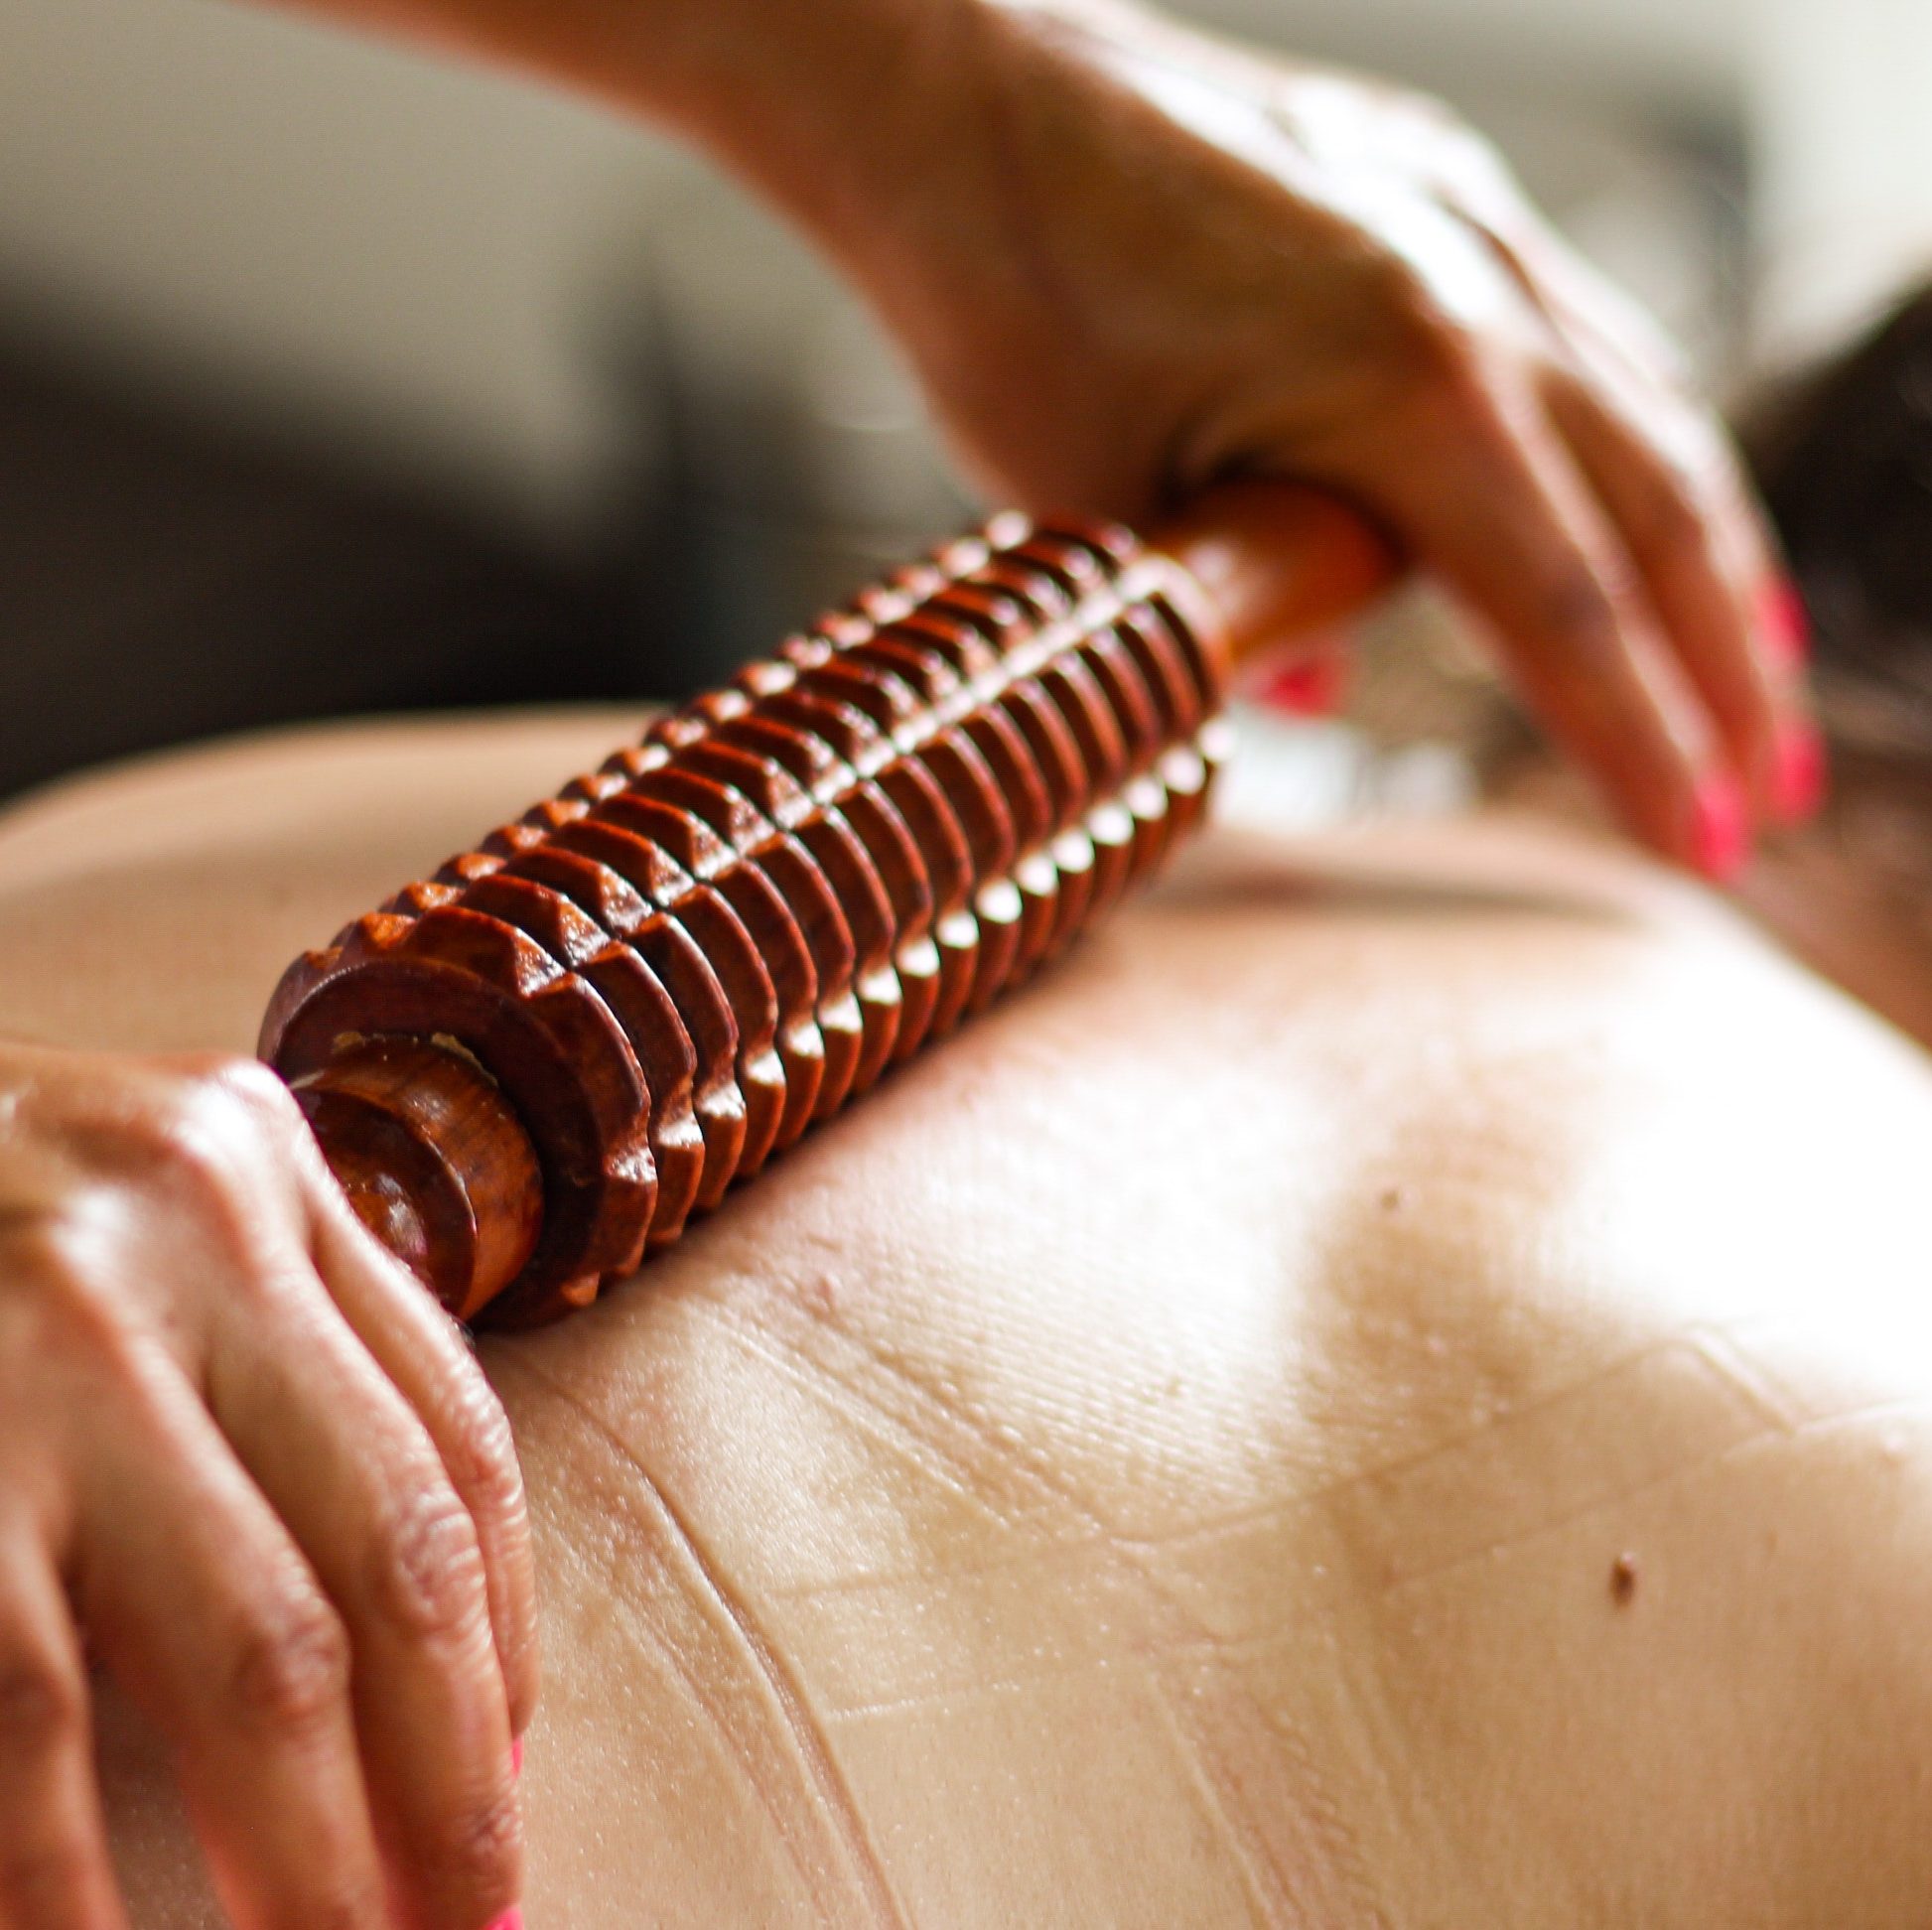 massages détente relaxation
madérothérapie
minceur
bien-être
Ambérieu-en-Bugey
massage sonore
bols tibétains
sonothérapie